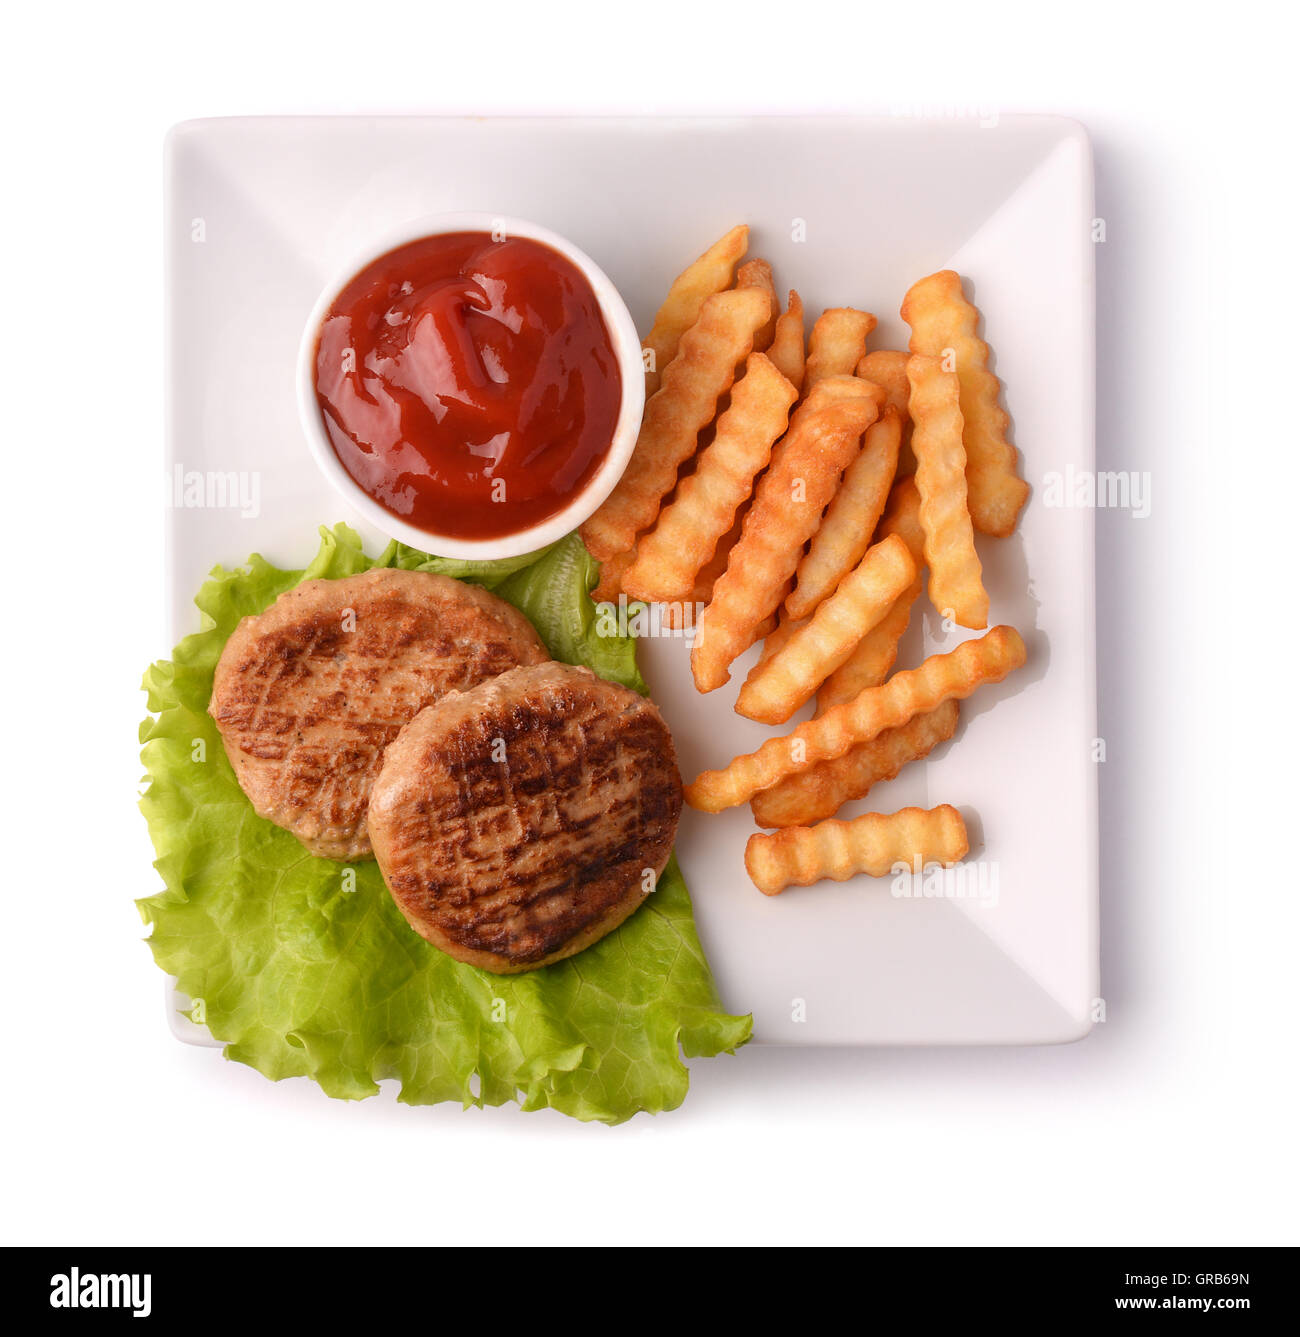 Vue du haut de la plaque avec des hamburgers, des frites et du ketchup isolated on white Banque D'Images